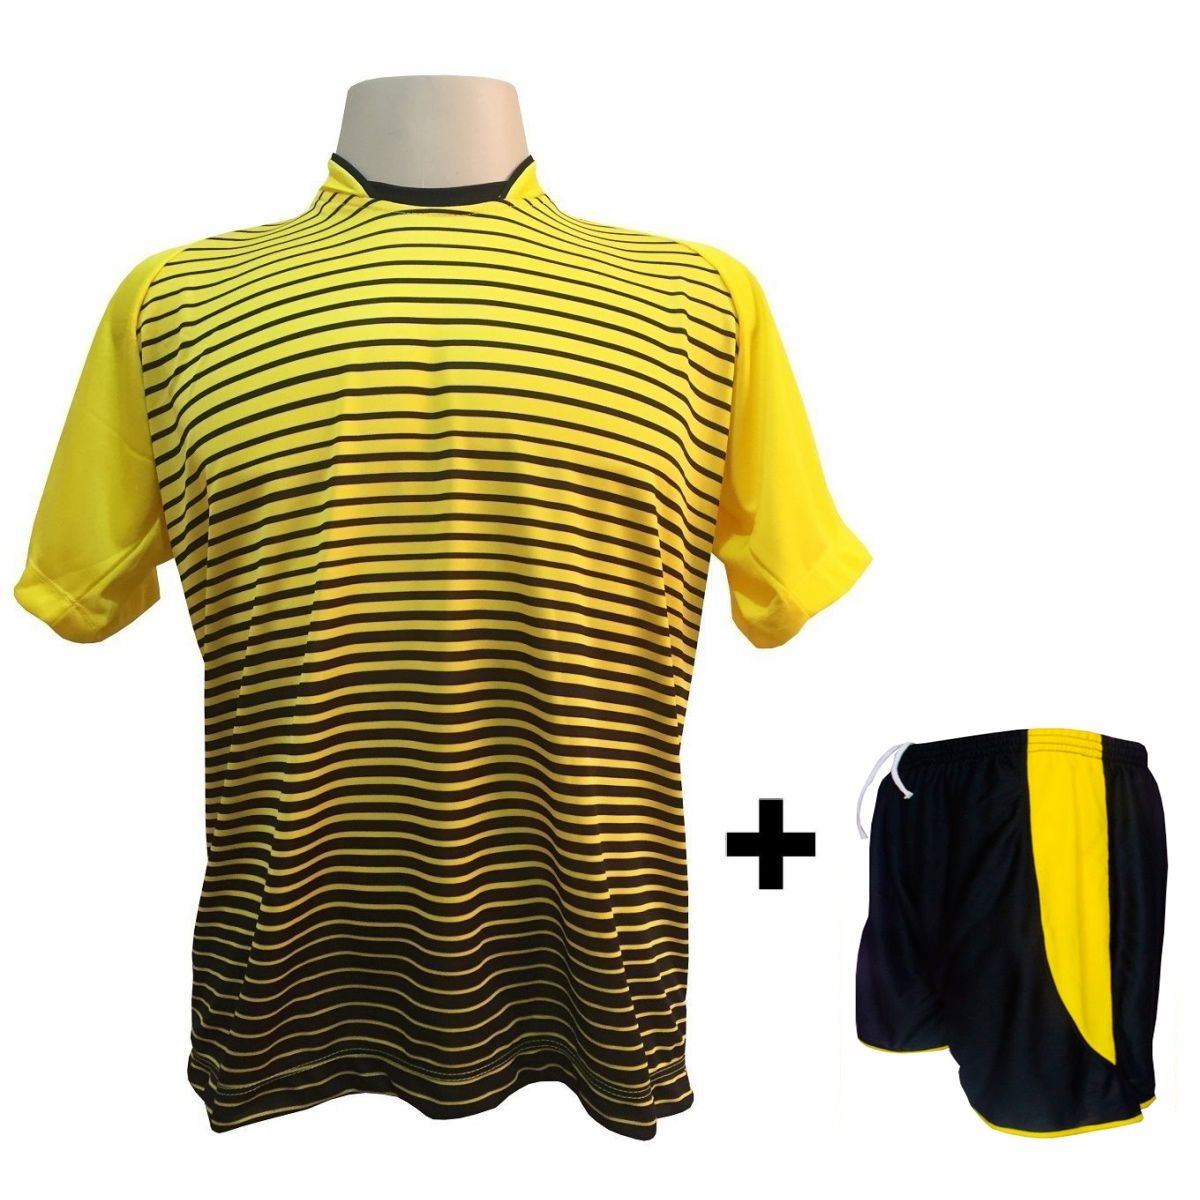 Uniforme Esportivo com 12 camisas modelo City Amarelo/Preto + 12 calções modelo Copa Preto/Amarelo + Brindes